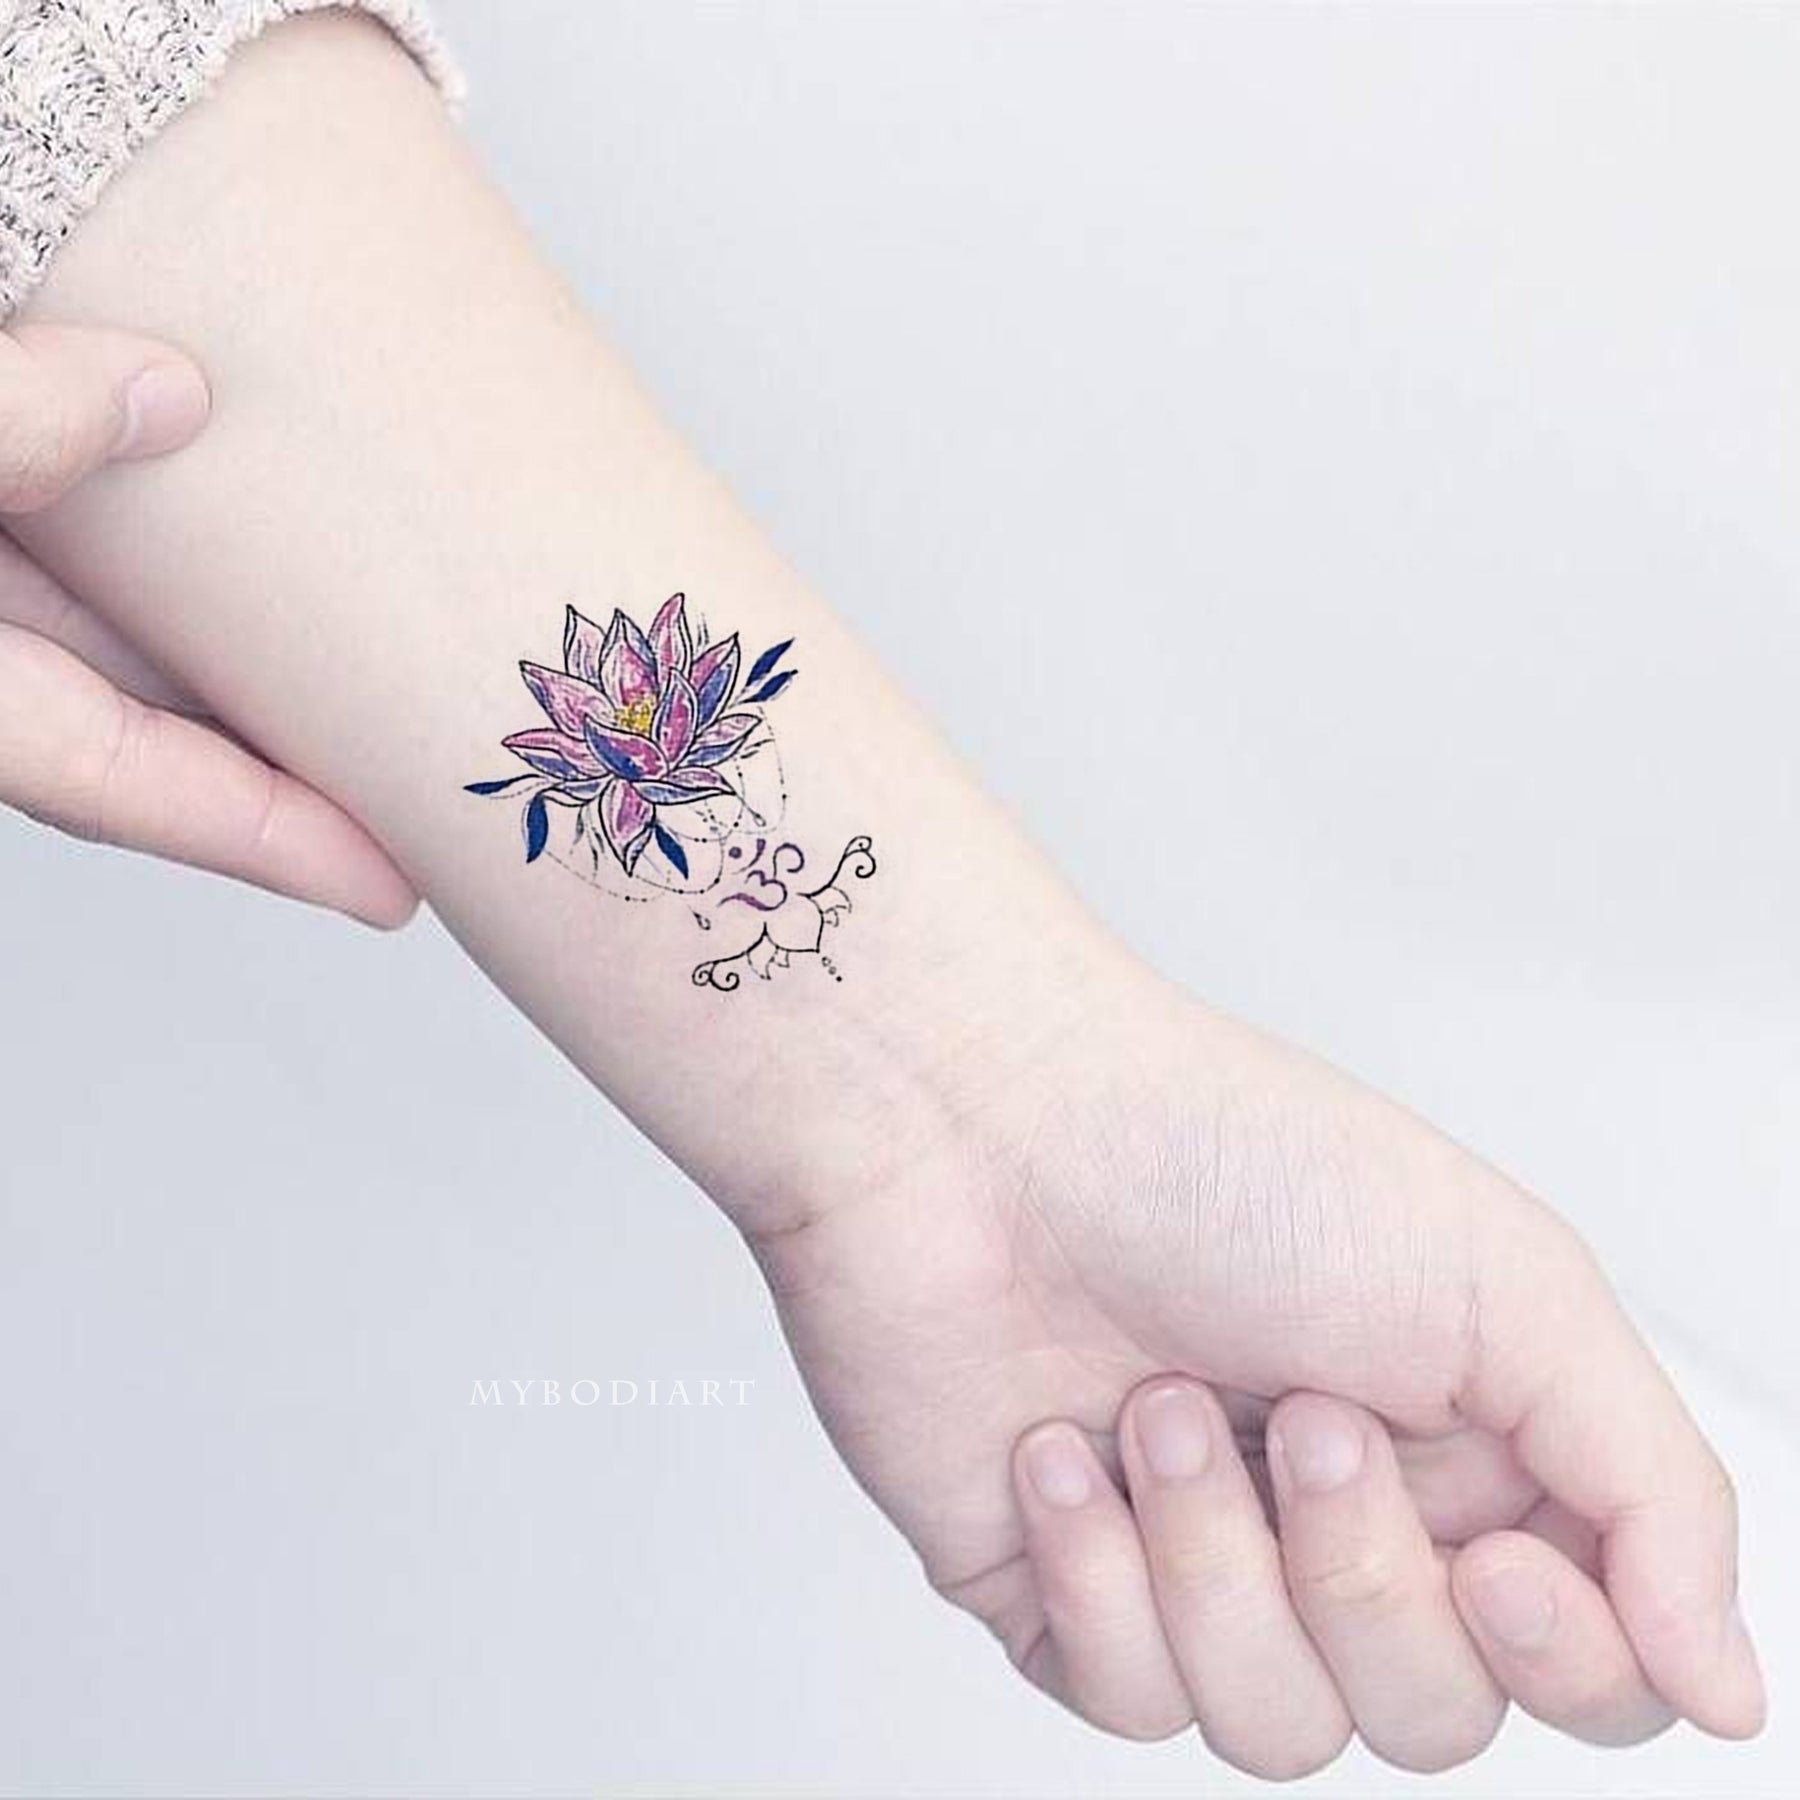 Snowflake Tattoos: – All Things Tattoo